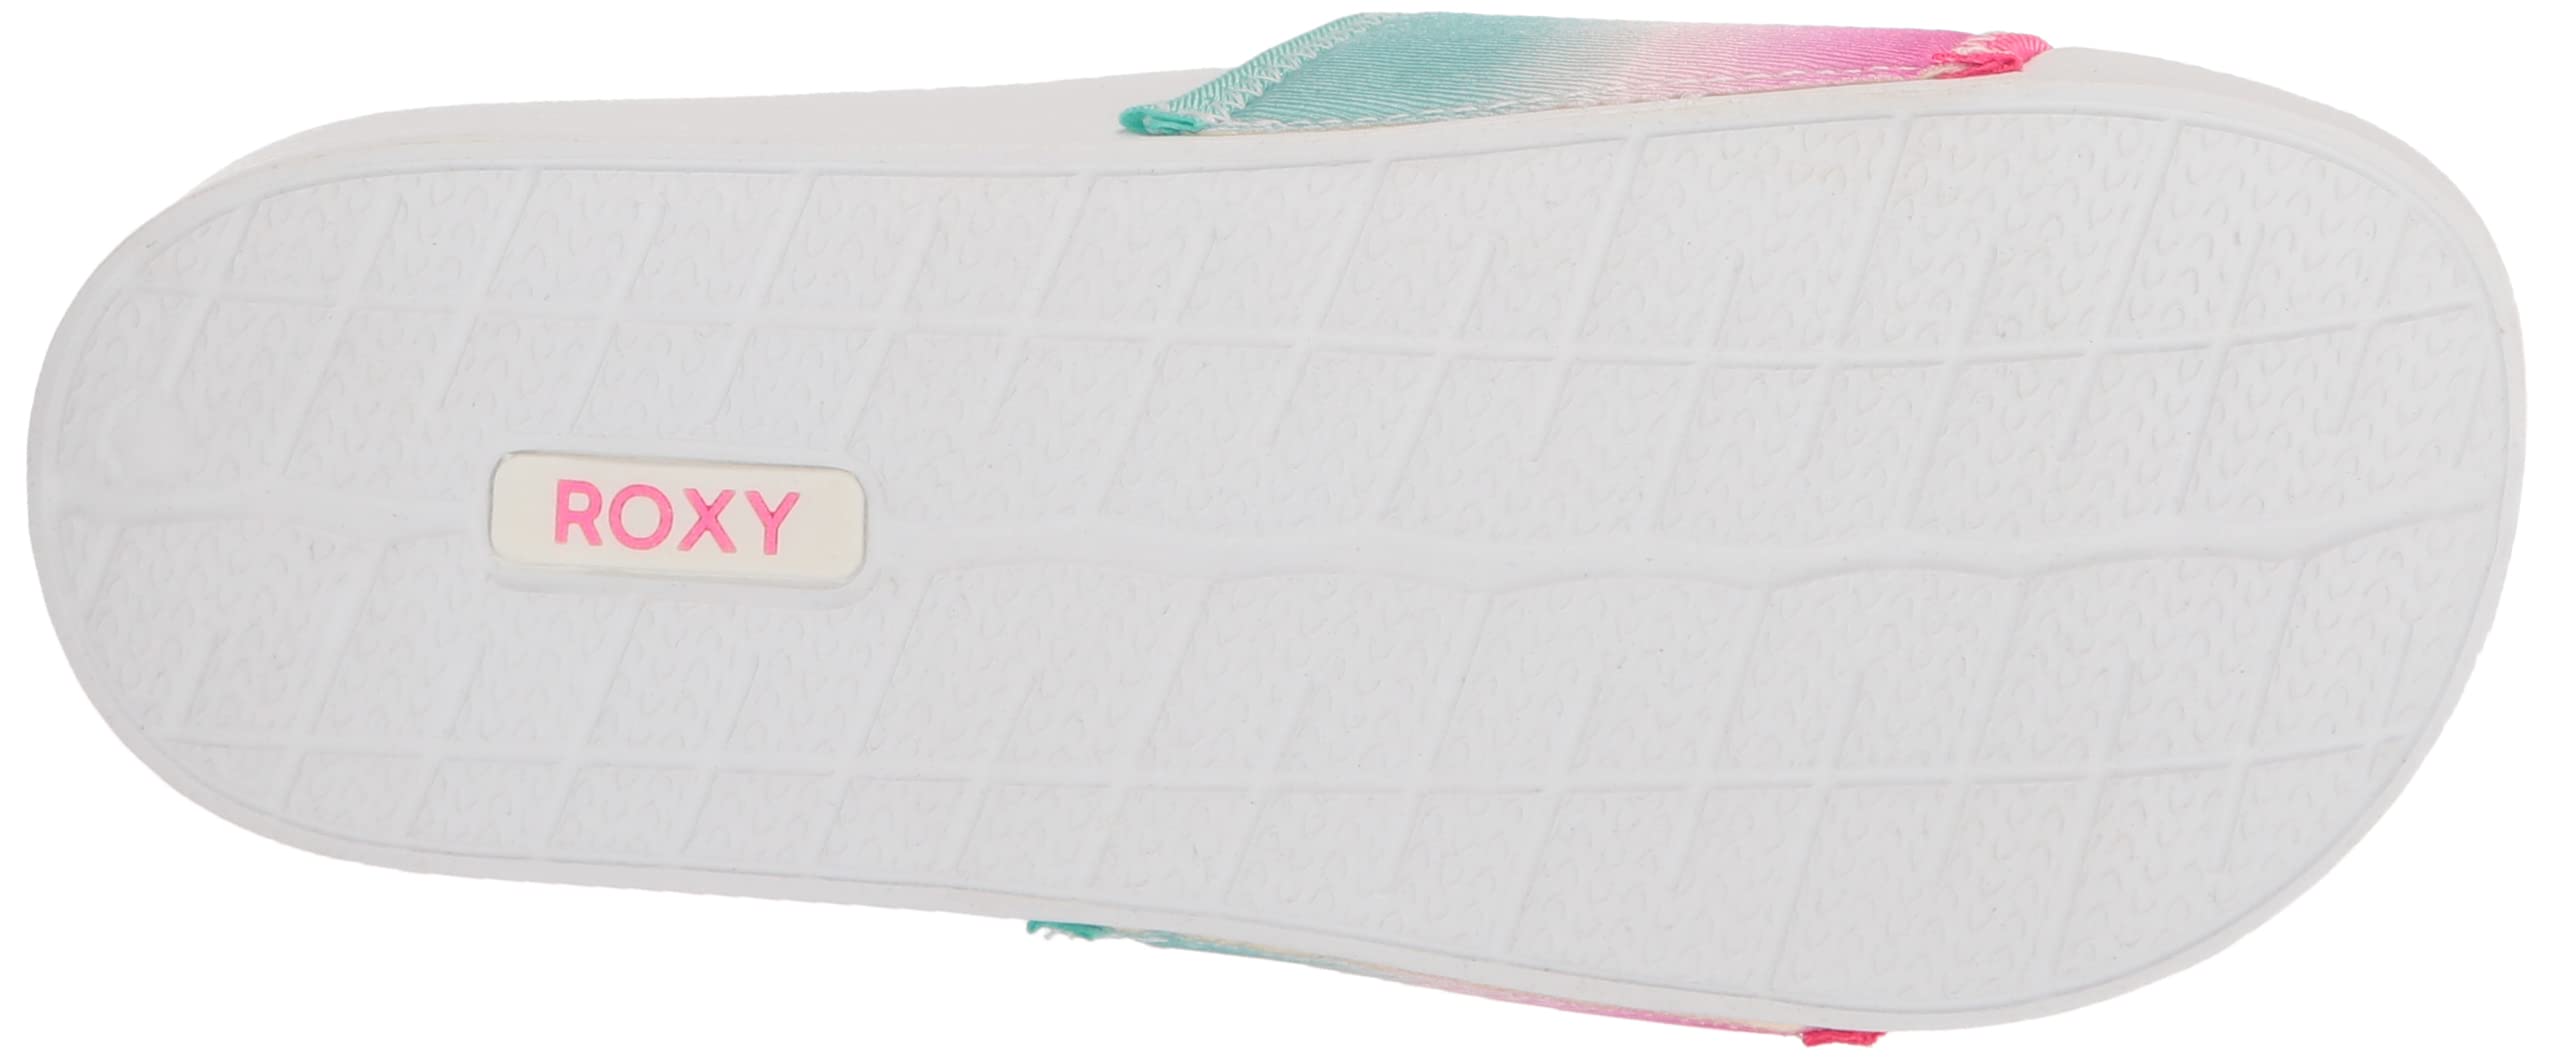 Roxy Women's Rg Slippy Slide Sandal